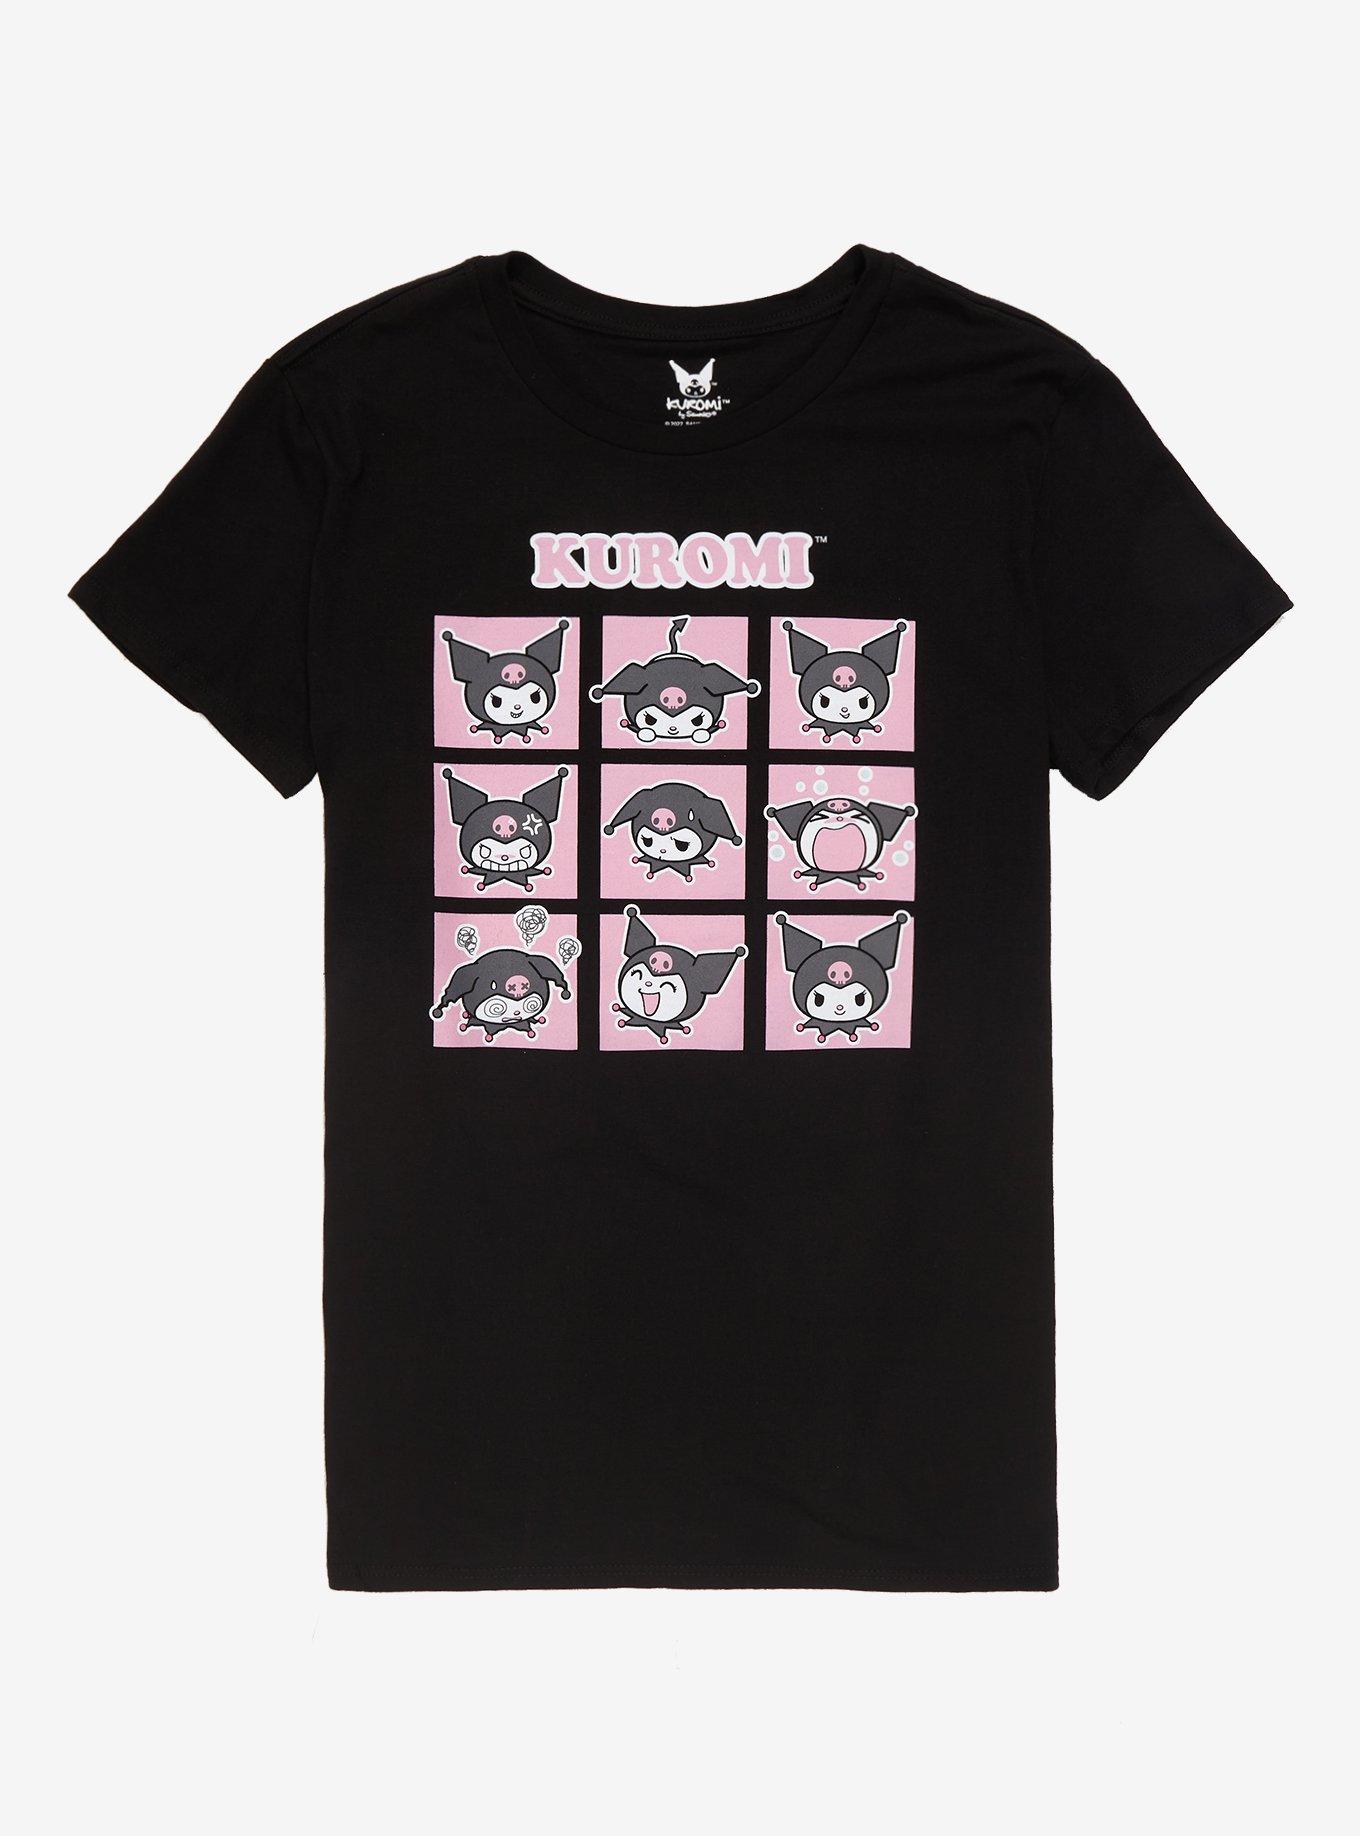 Kuromi Emotions Boyfriend Fit Girls T-Shirt